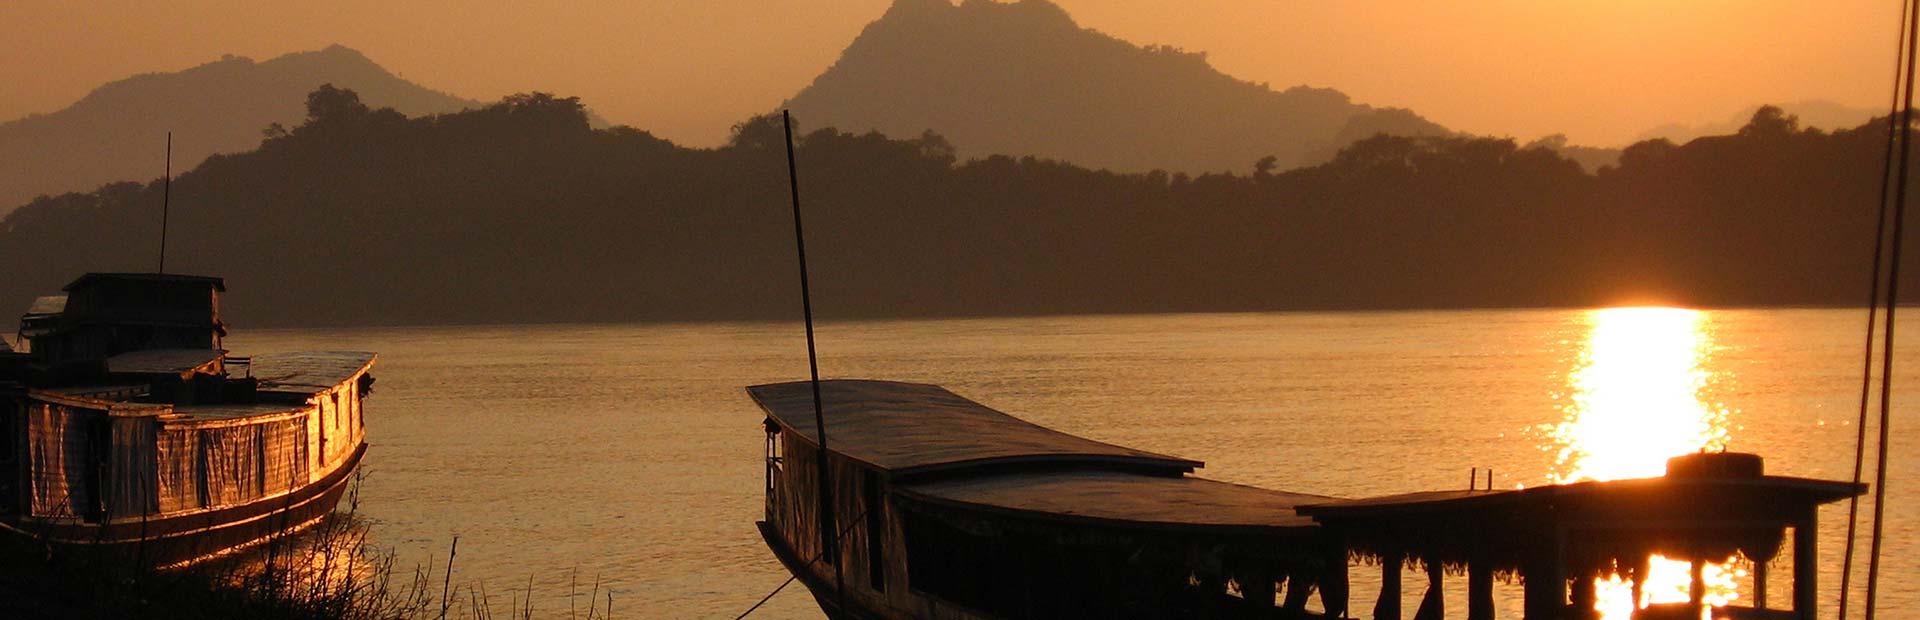 Mekong River at Sunset